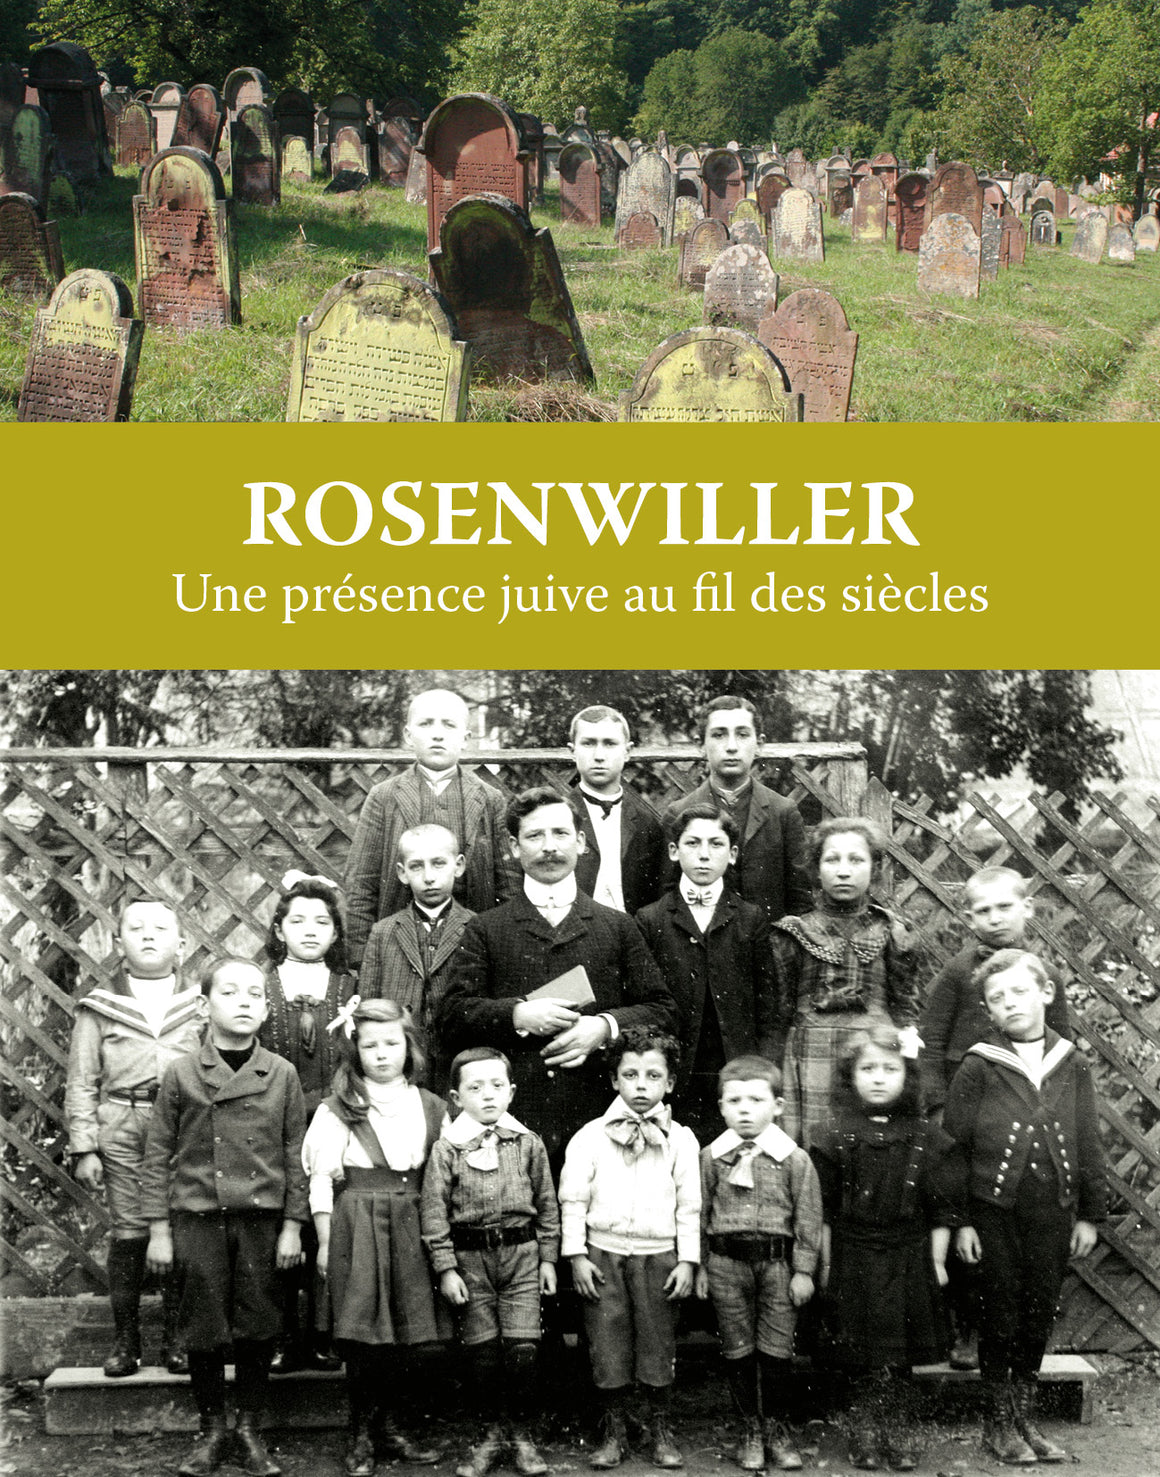 Rosenwiller, une présence juive au fil des siècles